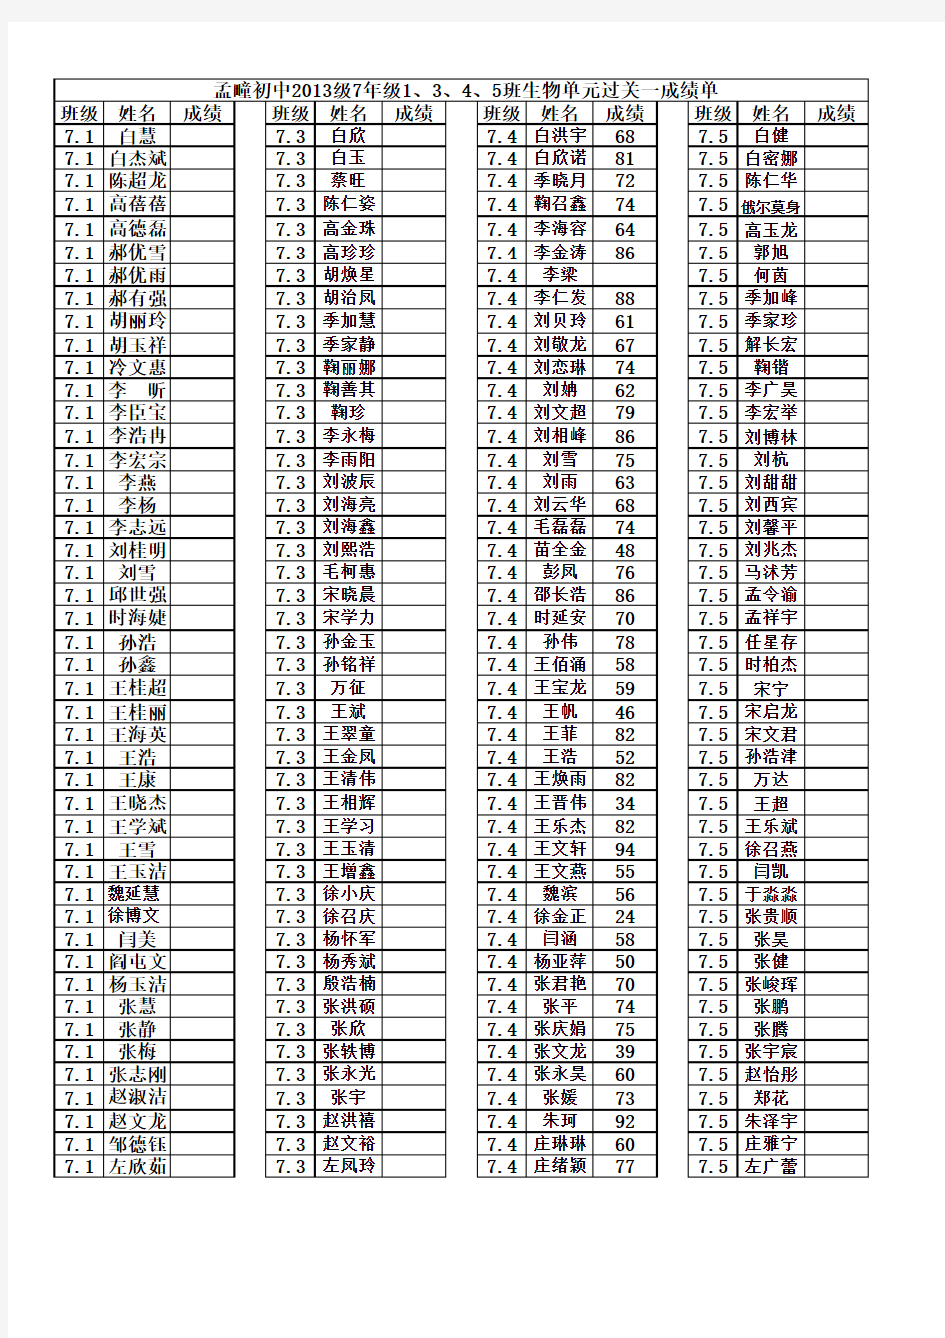 孟疃初中2013级7年级1、3、4、5班生物单元过关四成绩单